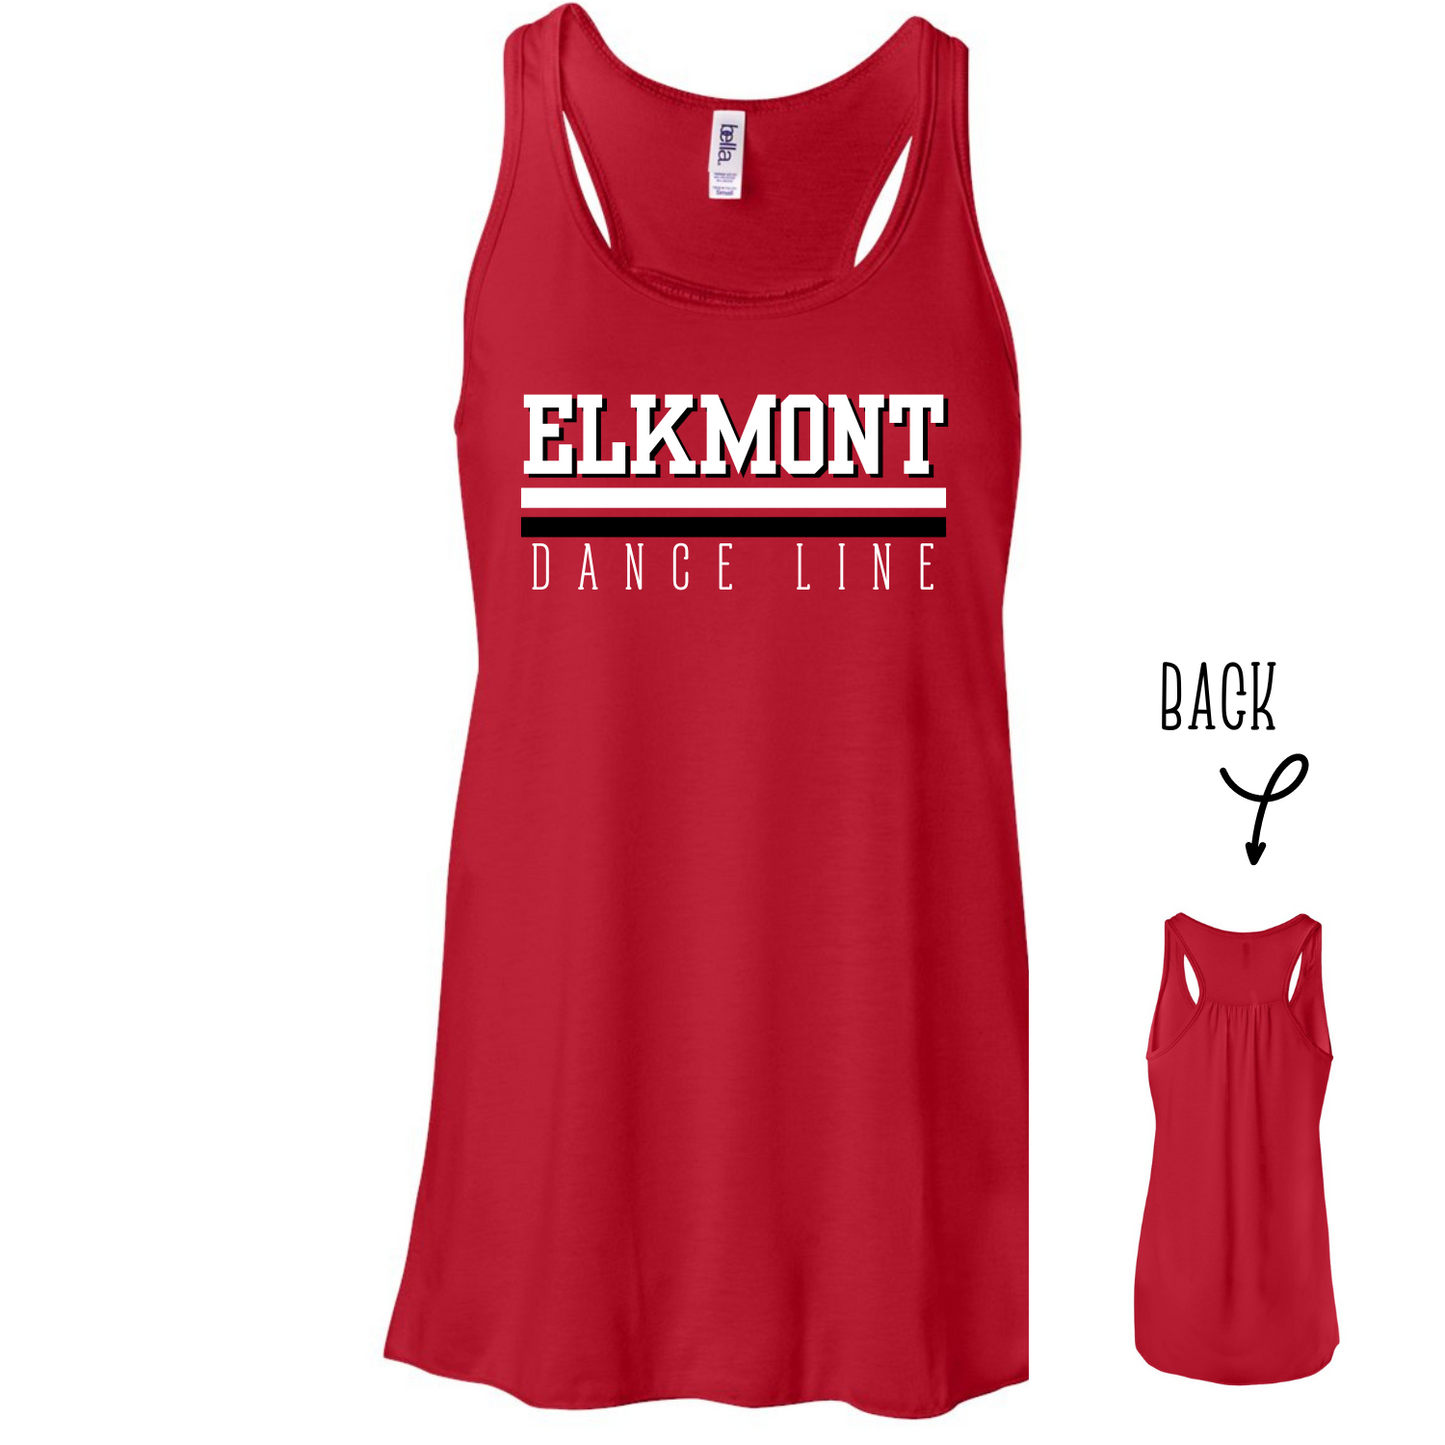 Elkmont Dance Line